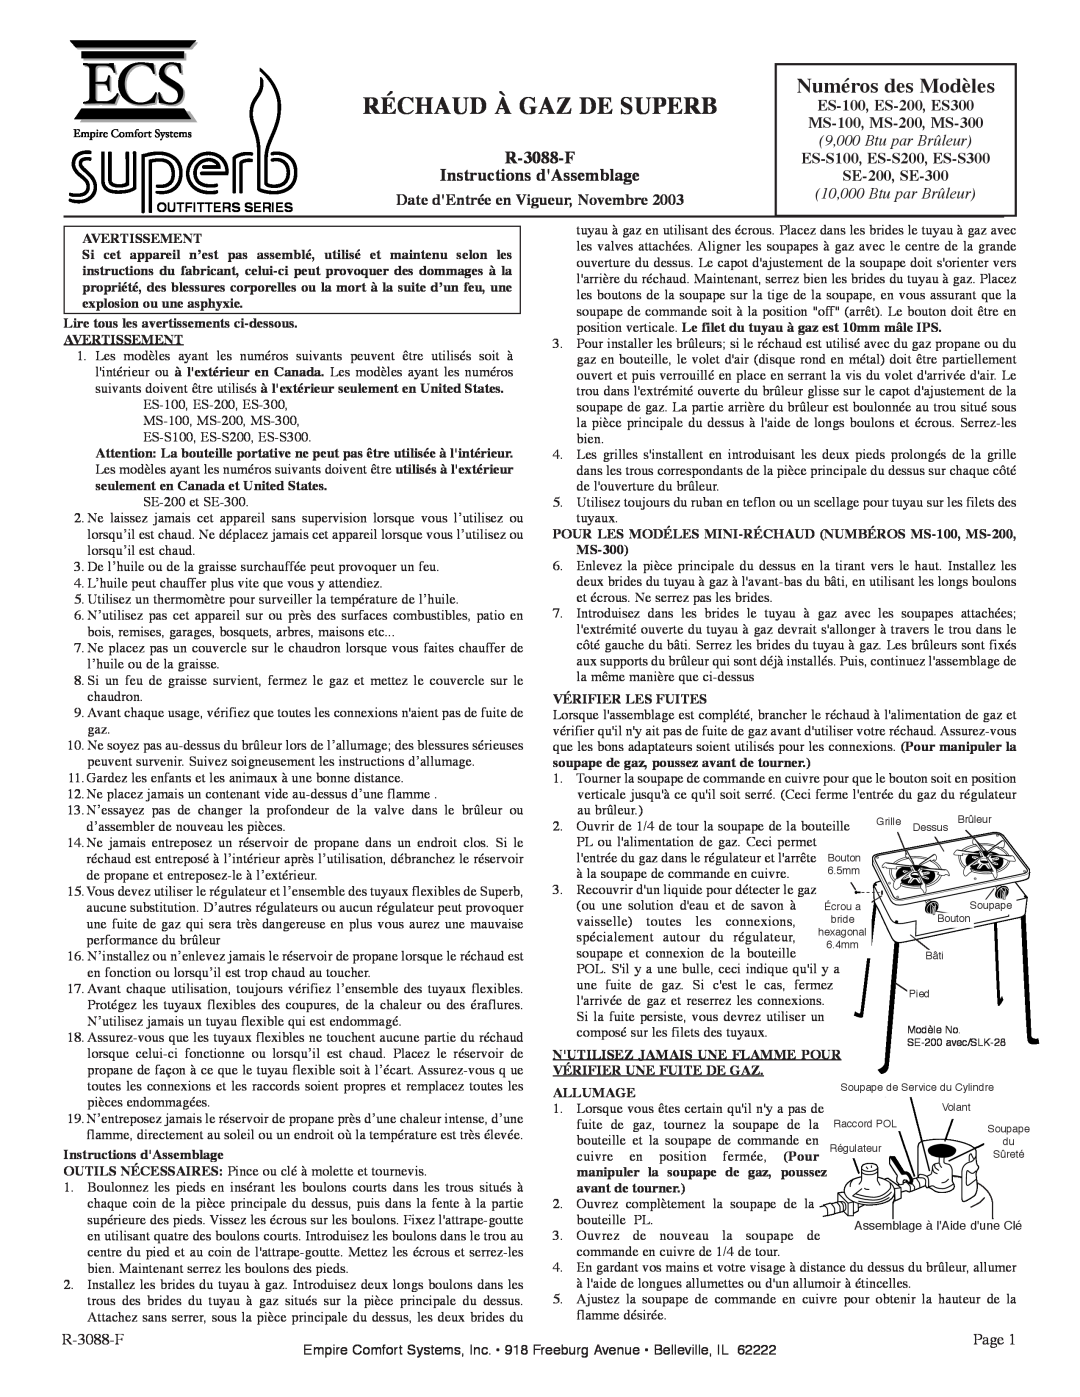 Empire Comfort Systems MS-100, SE-200 manual Numéros des Modèles, R-3088-F Instructions dAssemblage, Réchaud À Gaz De Superb 